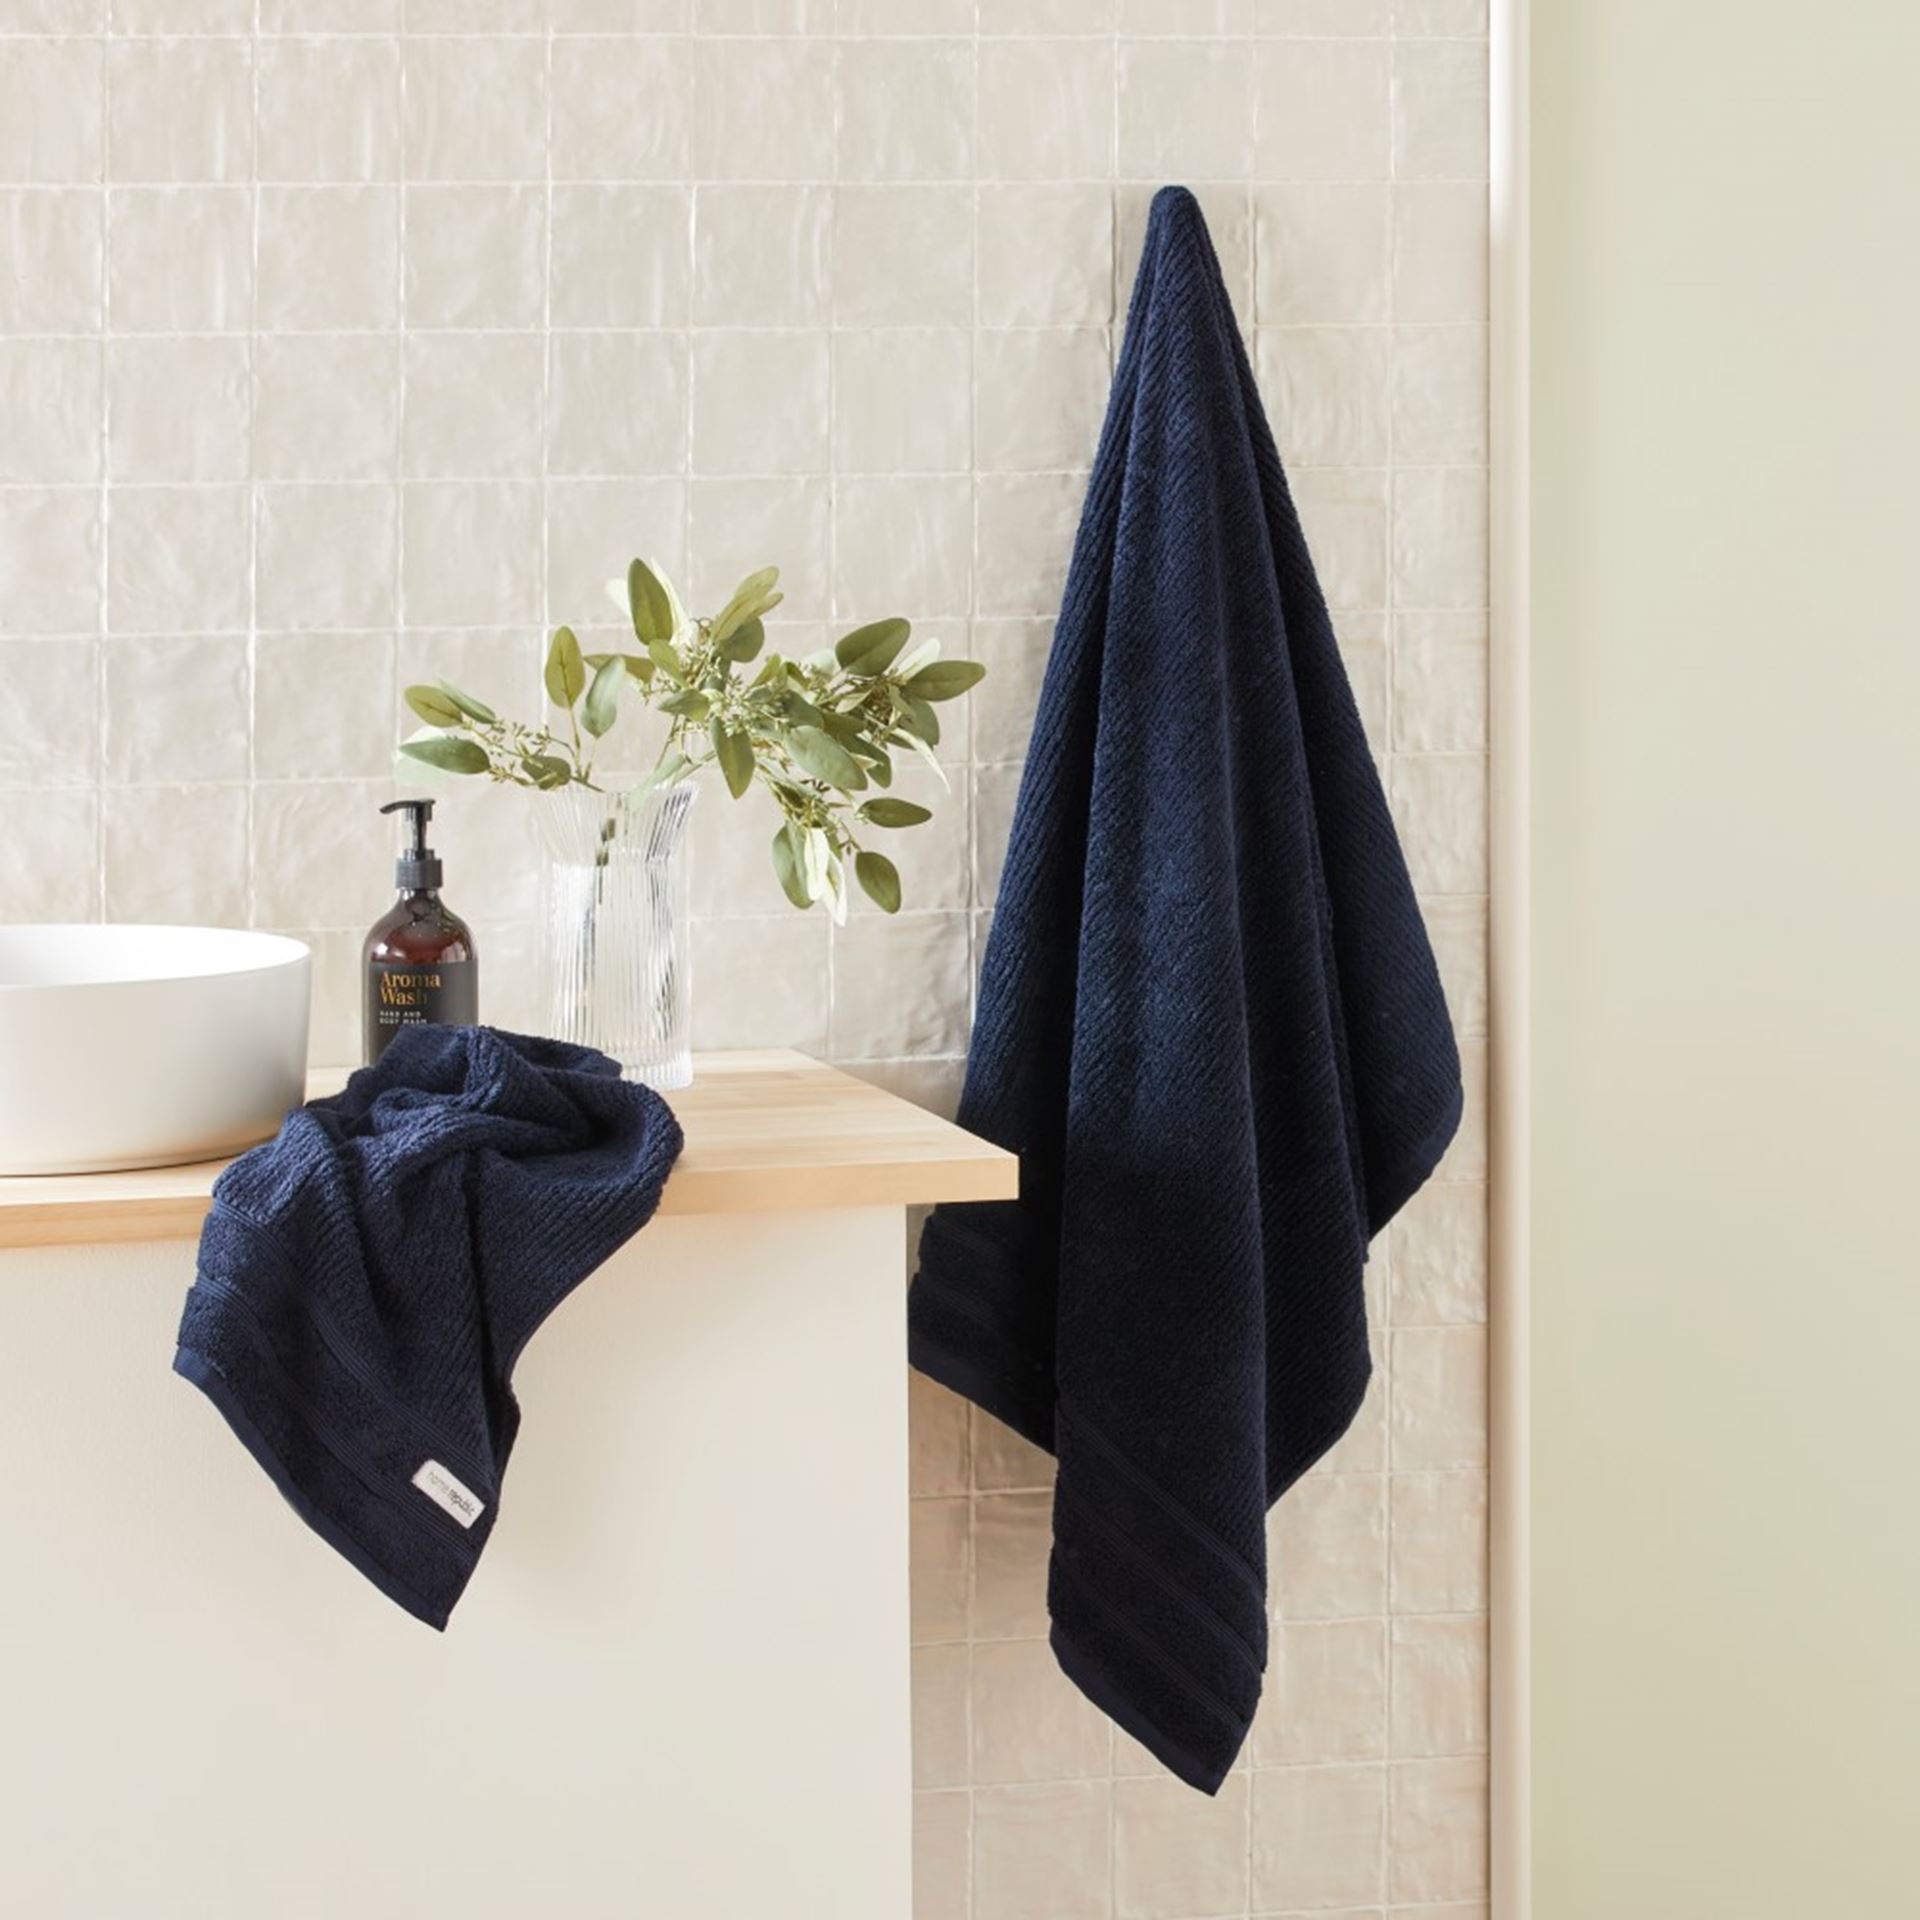 Flinders White Towel Range, Bathroom